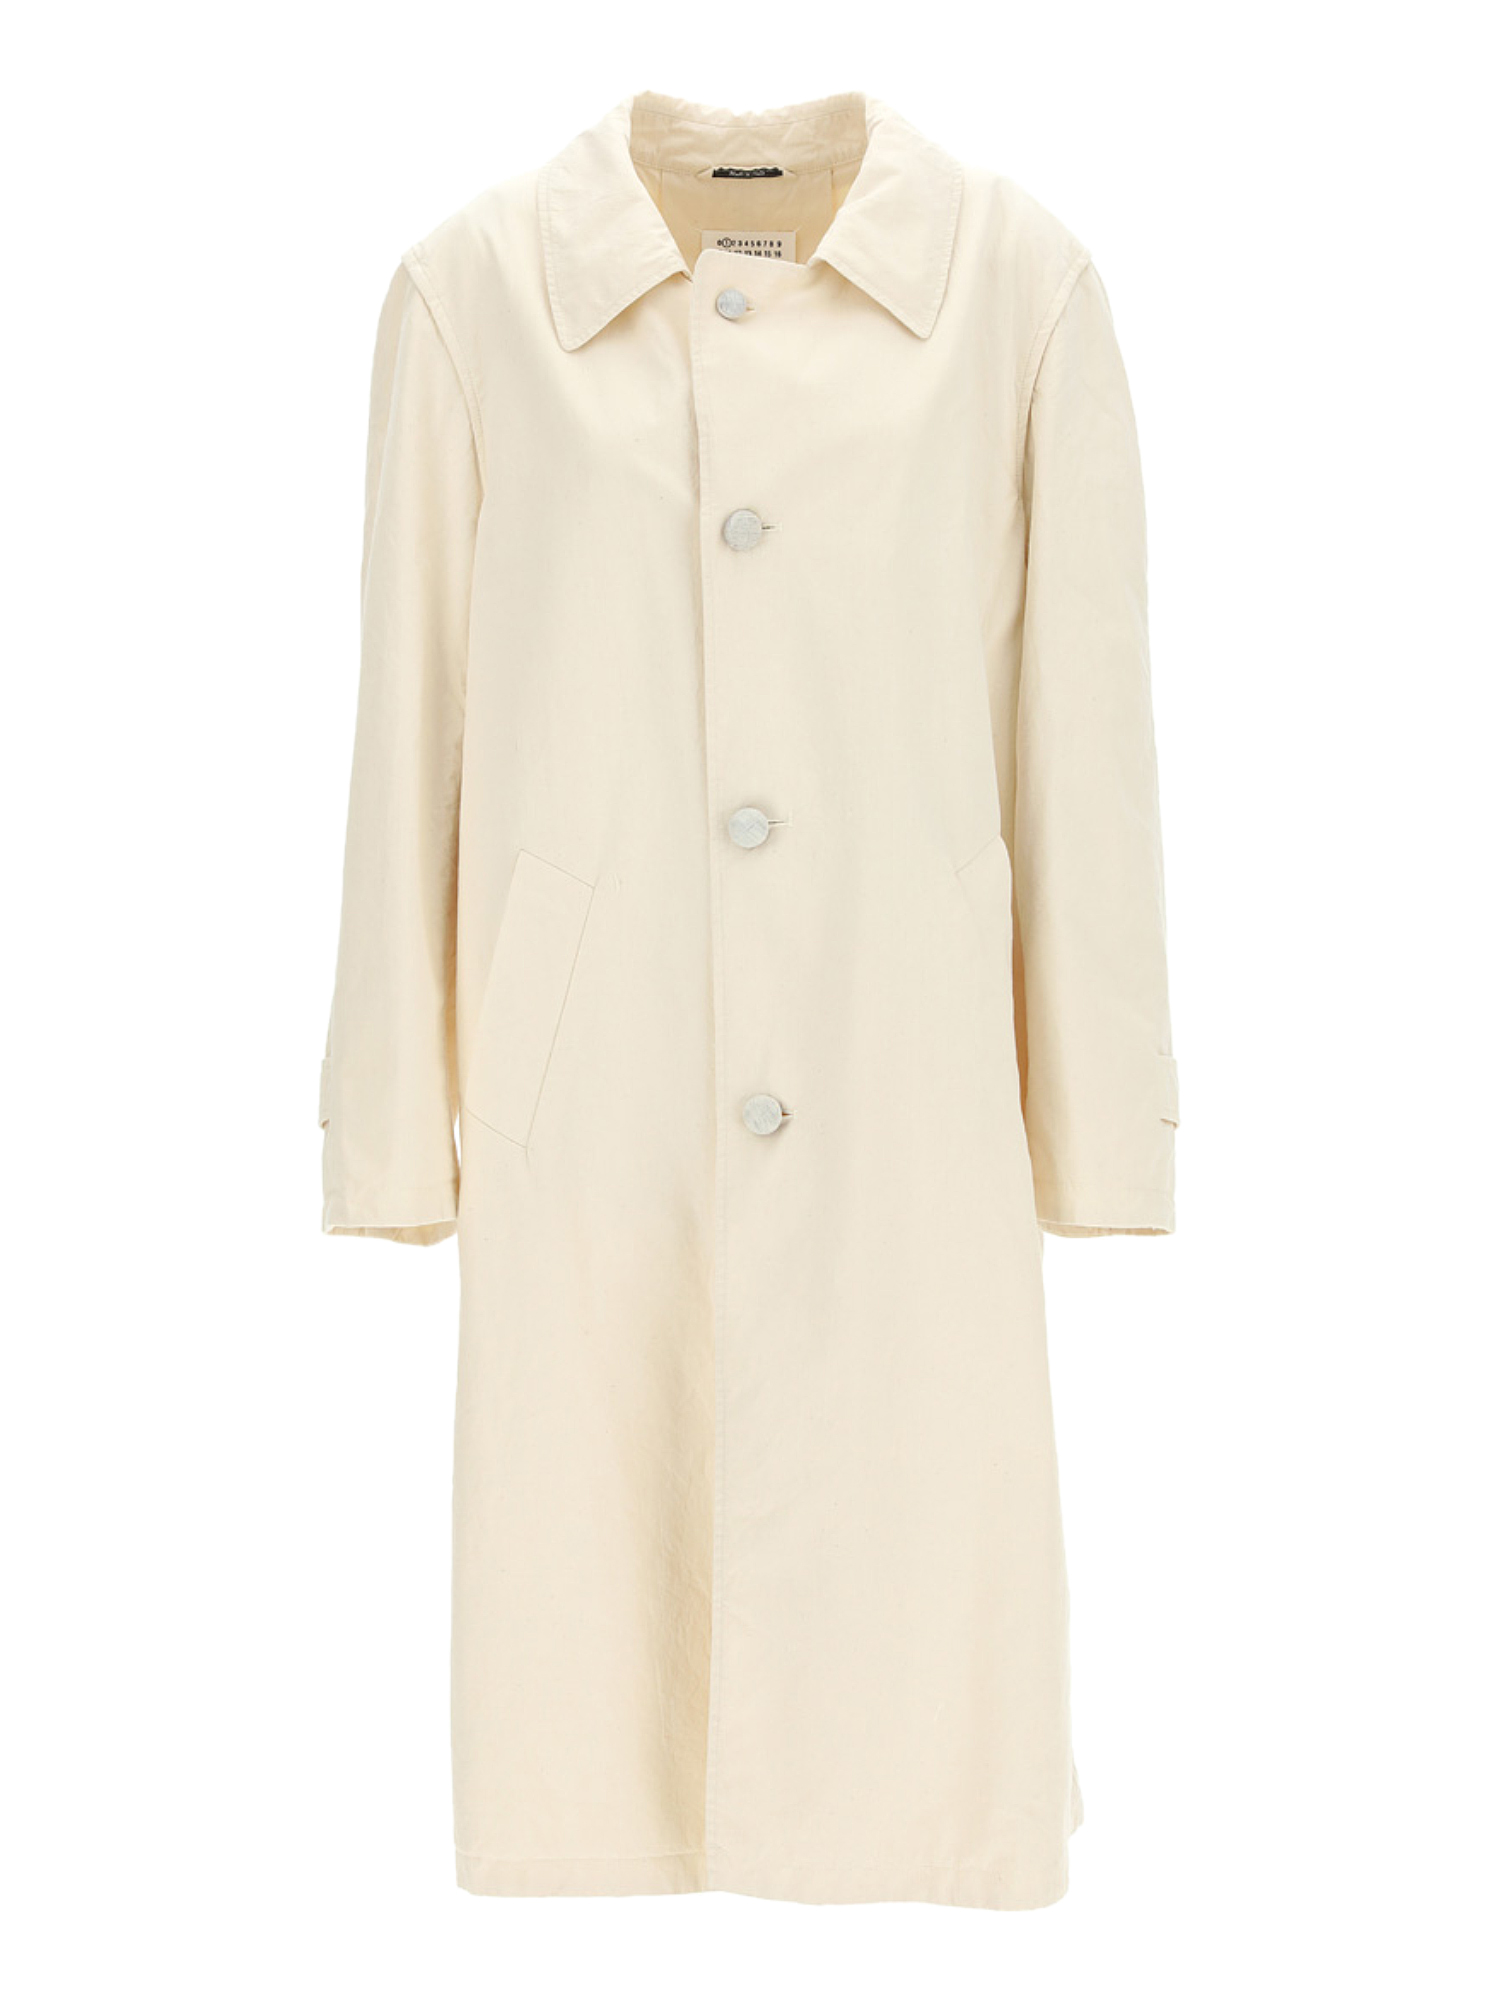 Vestes Pour Femme - Maison Margiela - En Cotton White - Taille:  -